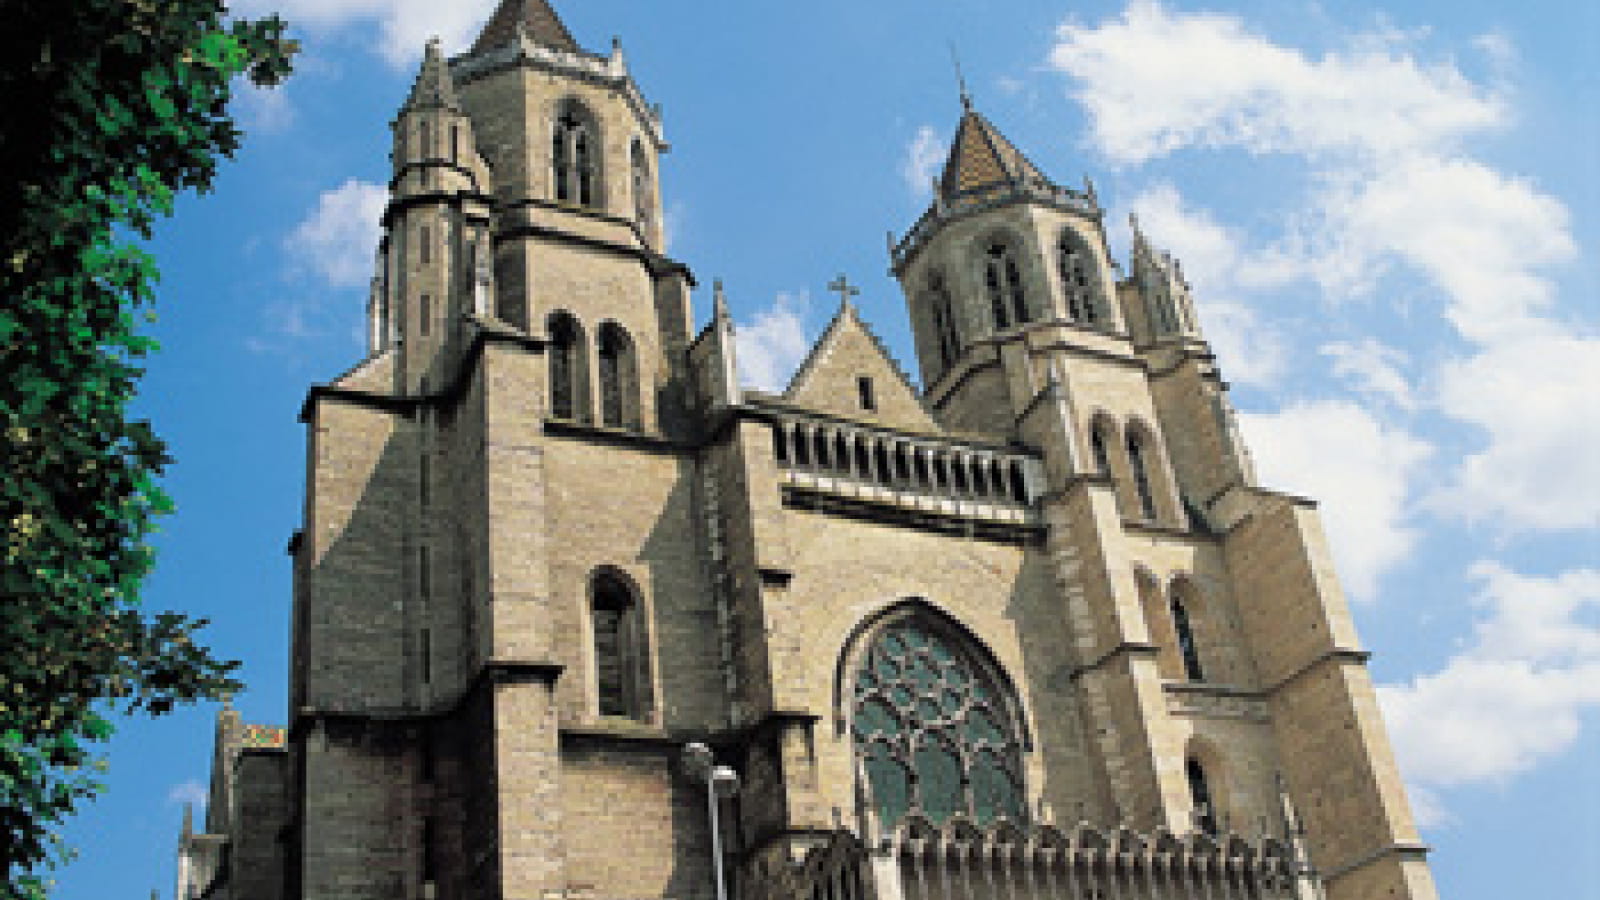 Cathédrale Saint-Bénigne